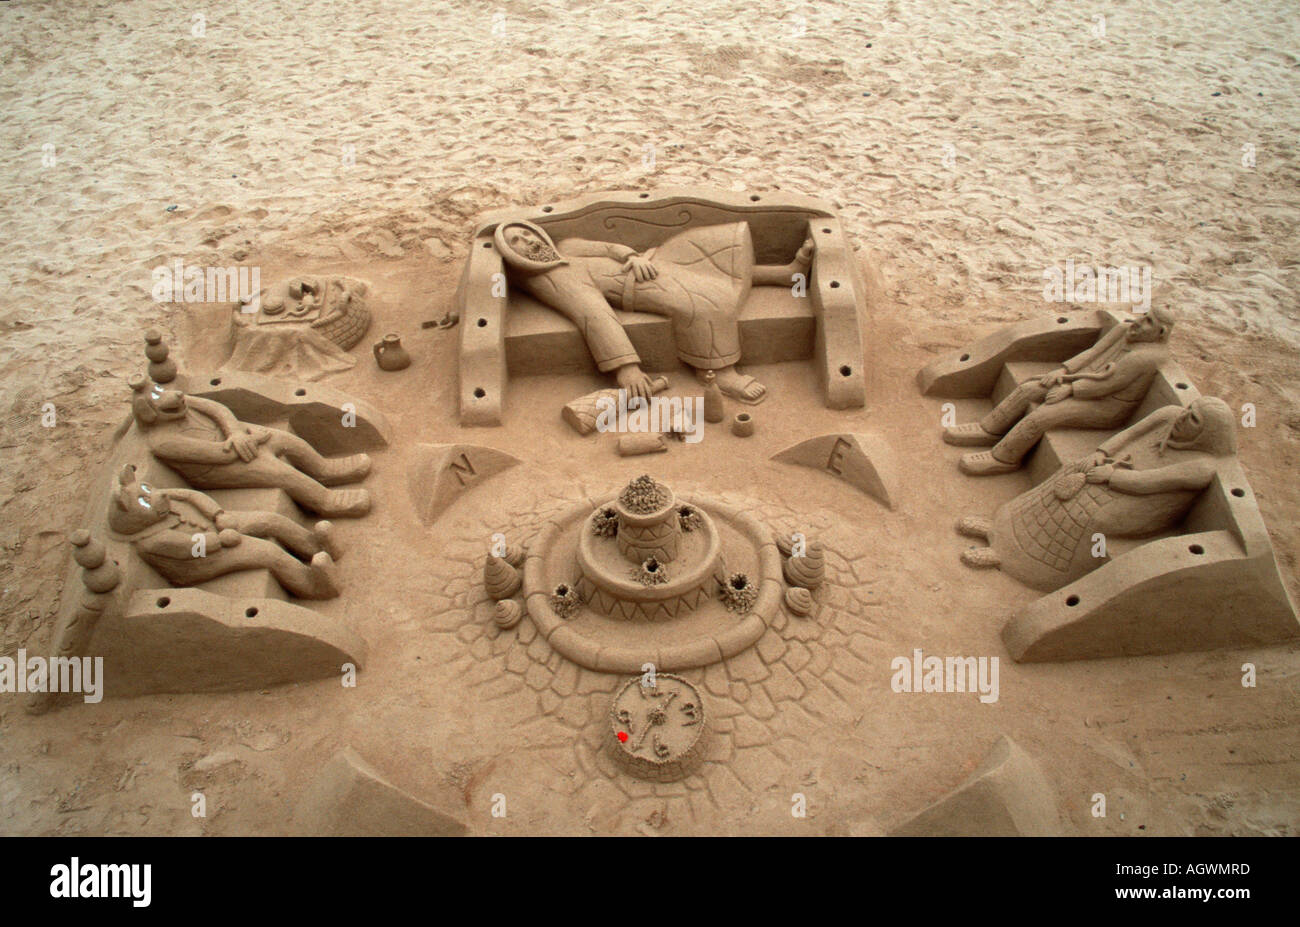 Sand sculputures / Sandskulpturen Stock Photo